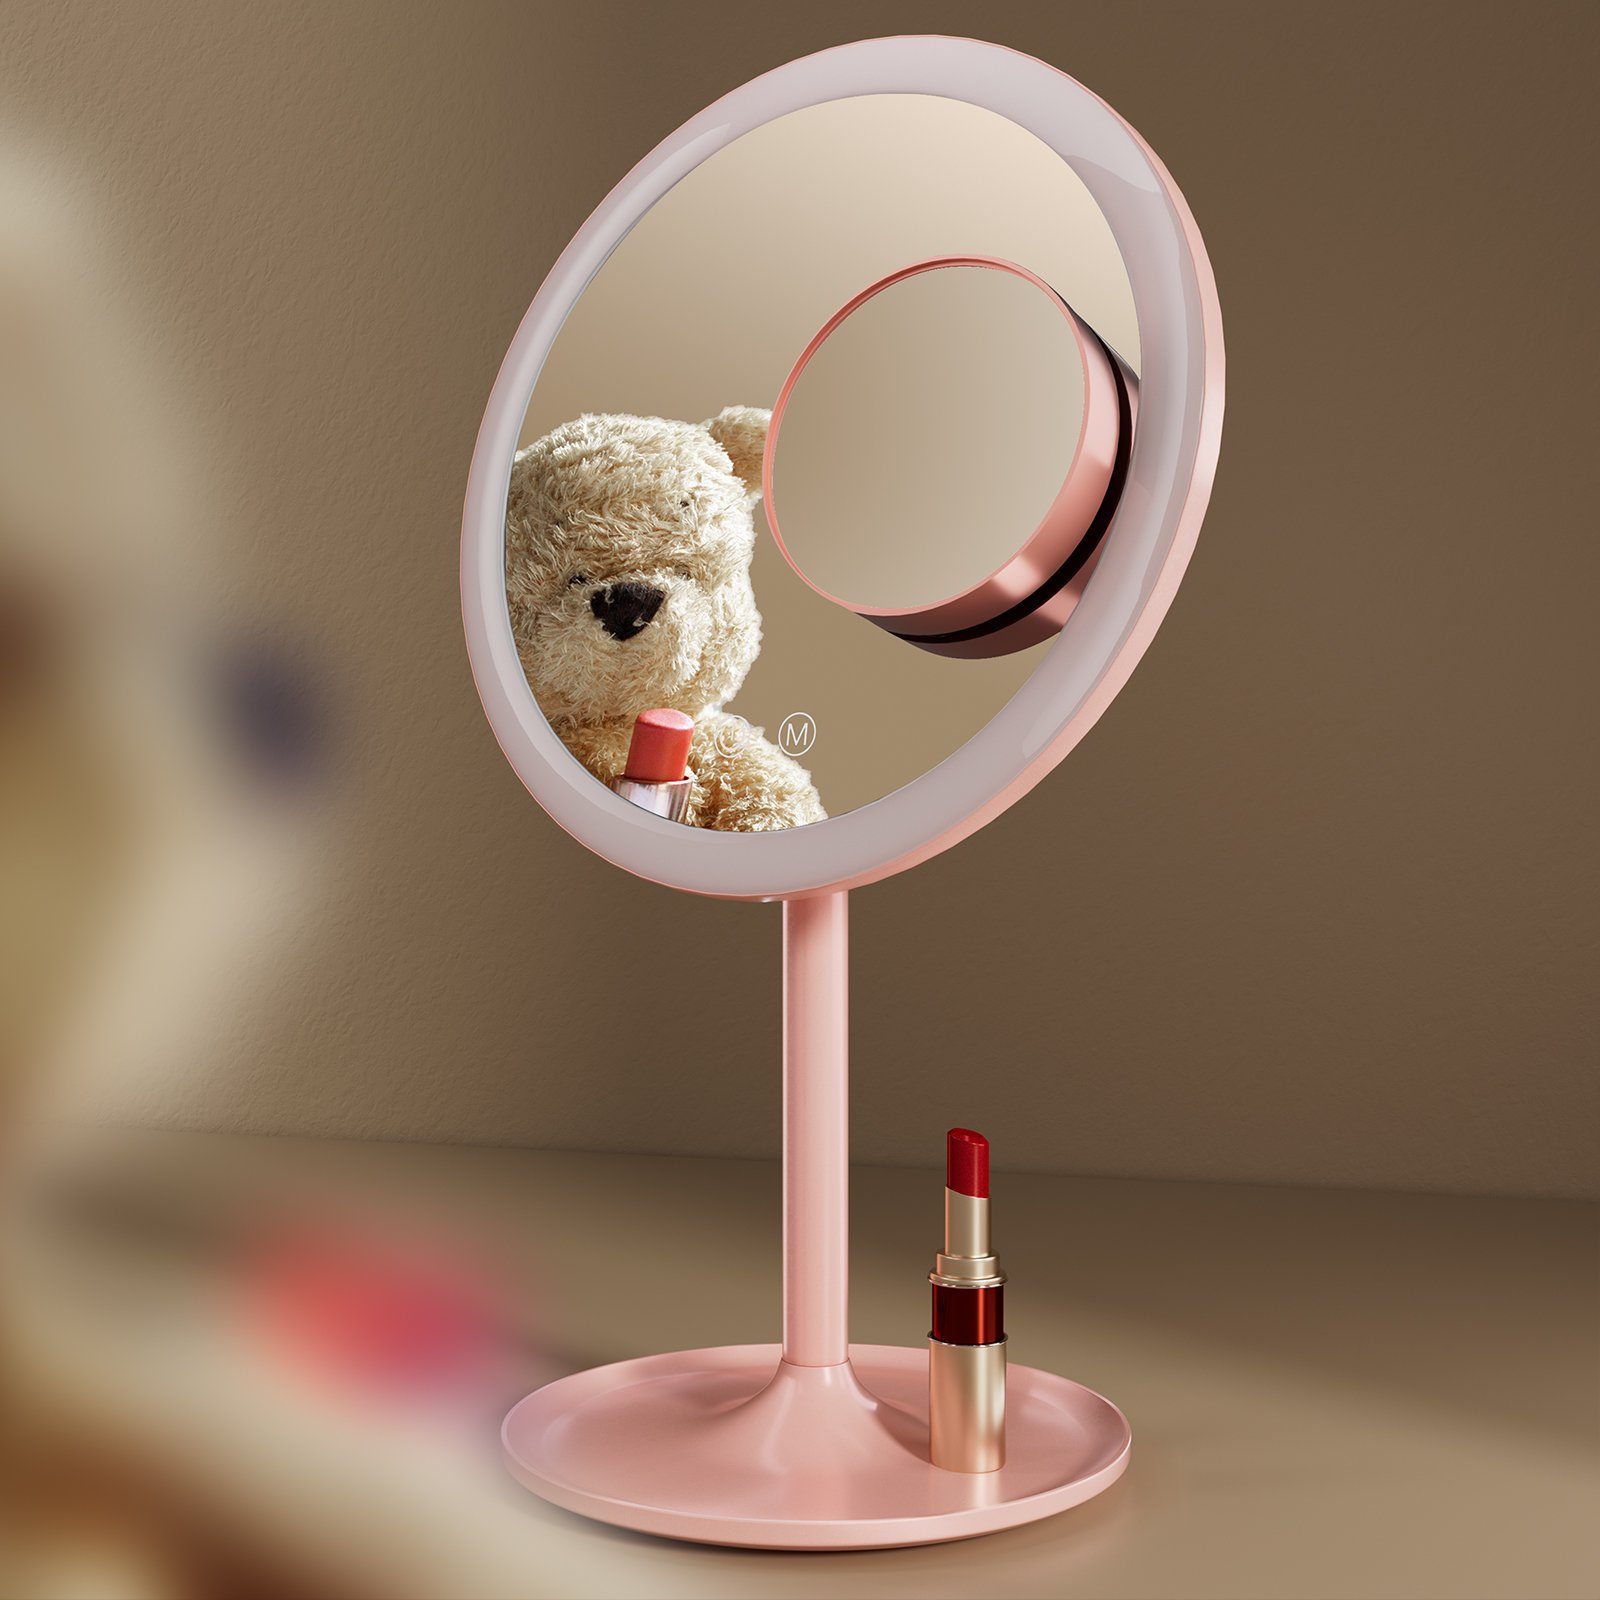 Schminken für Dimmbar, Aufladbarer Beleuchtung EMKE Rosa 3 / 1X Lichtfarben Macaron Tischspiegel LED Schminkspiegel 3X,90°Drehbar,USB Kosmetikspiegel mit